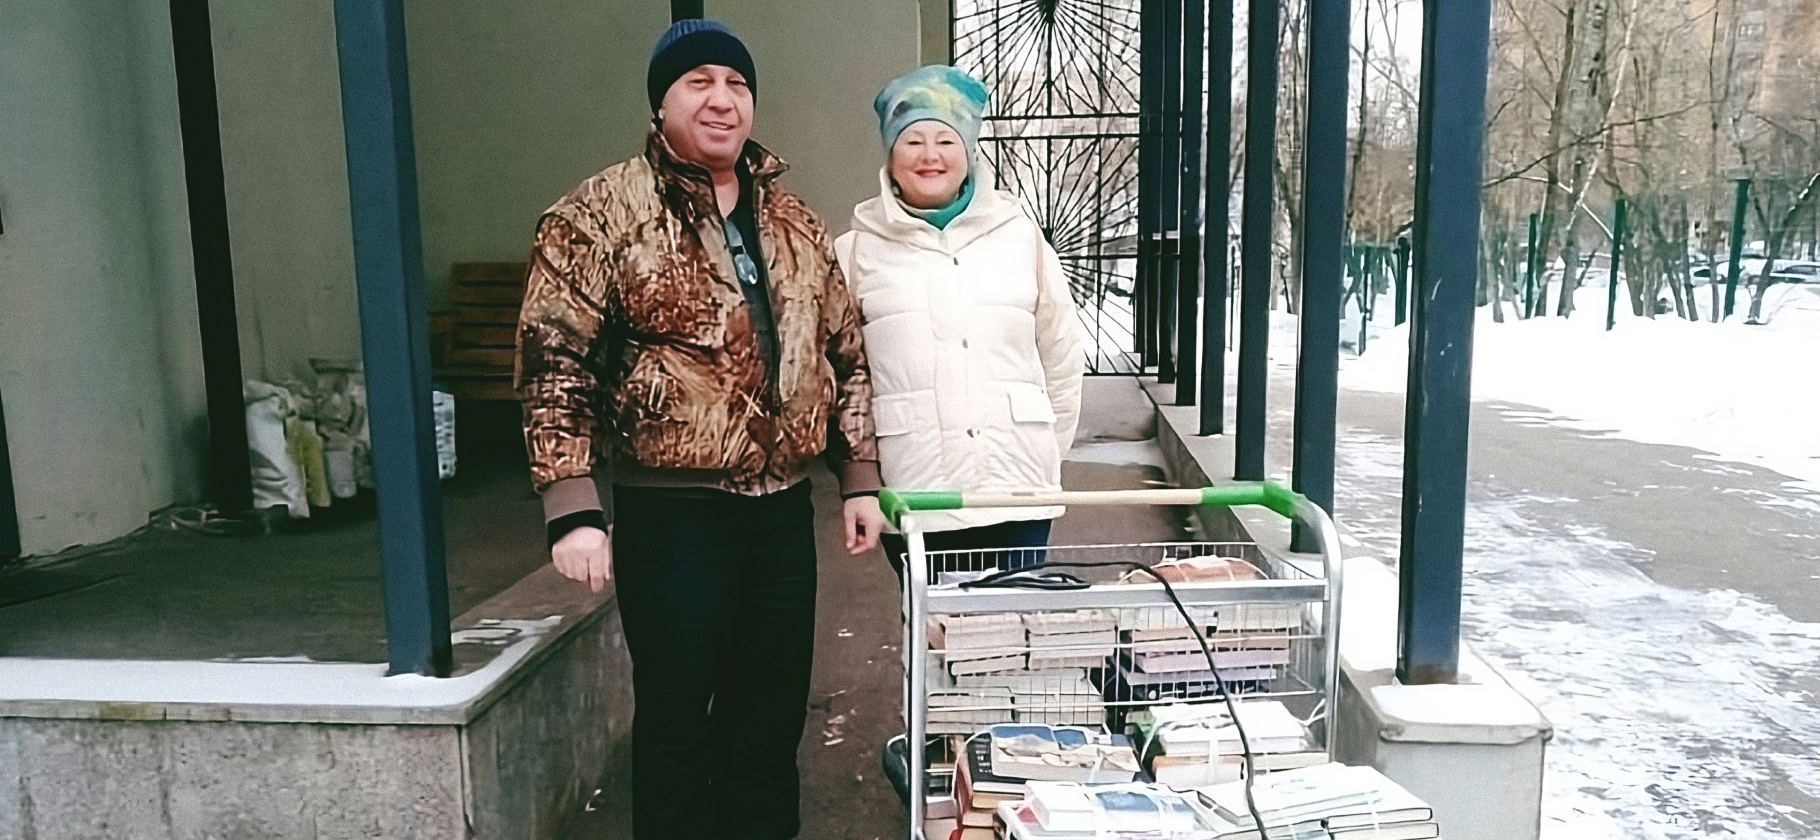 «Люди радуются даже одной интересной книге»: как волонтеры помогают сельским библиотекам